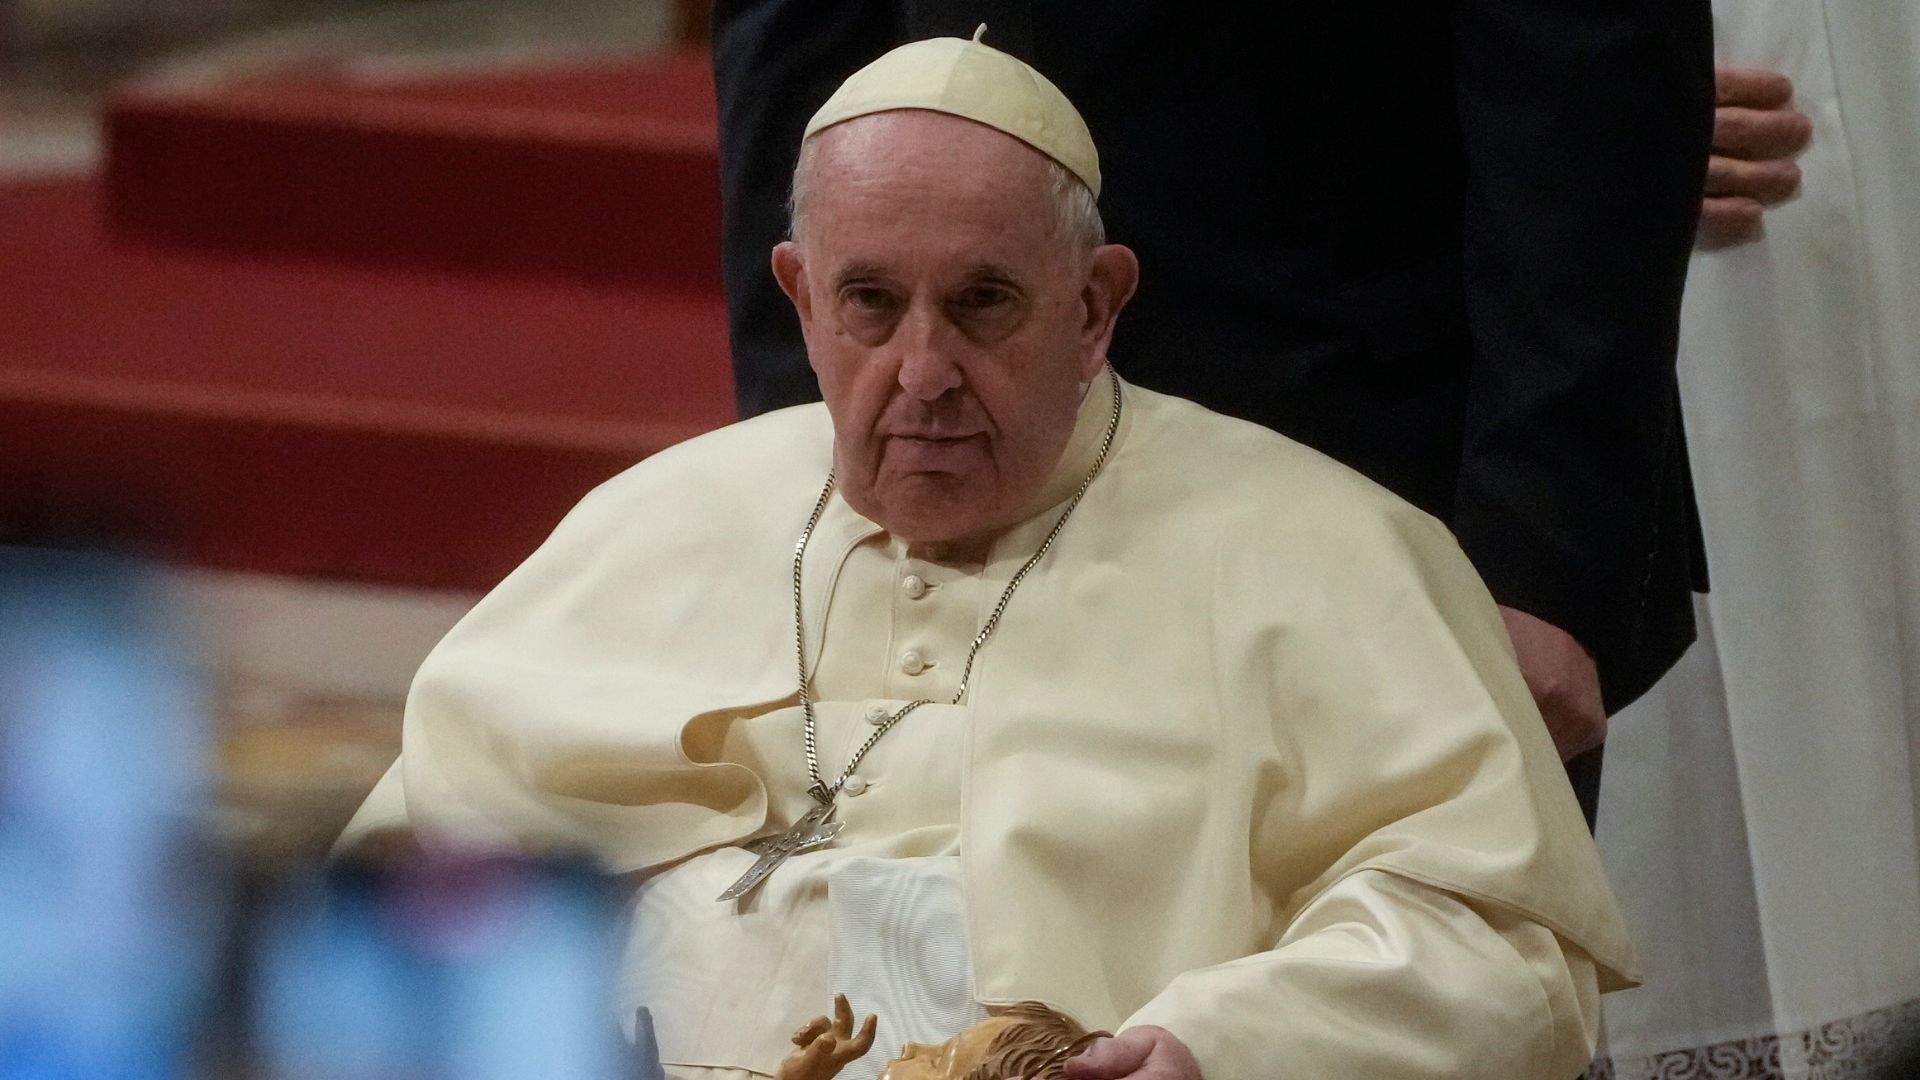 Em discurso na Missa do Galo, o Papa criticou a ganância e a fome de poder - Foto: Foto: Gregorio Borgia/Associated Press/Estadão Conteúdo